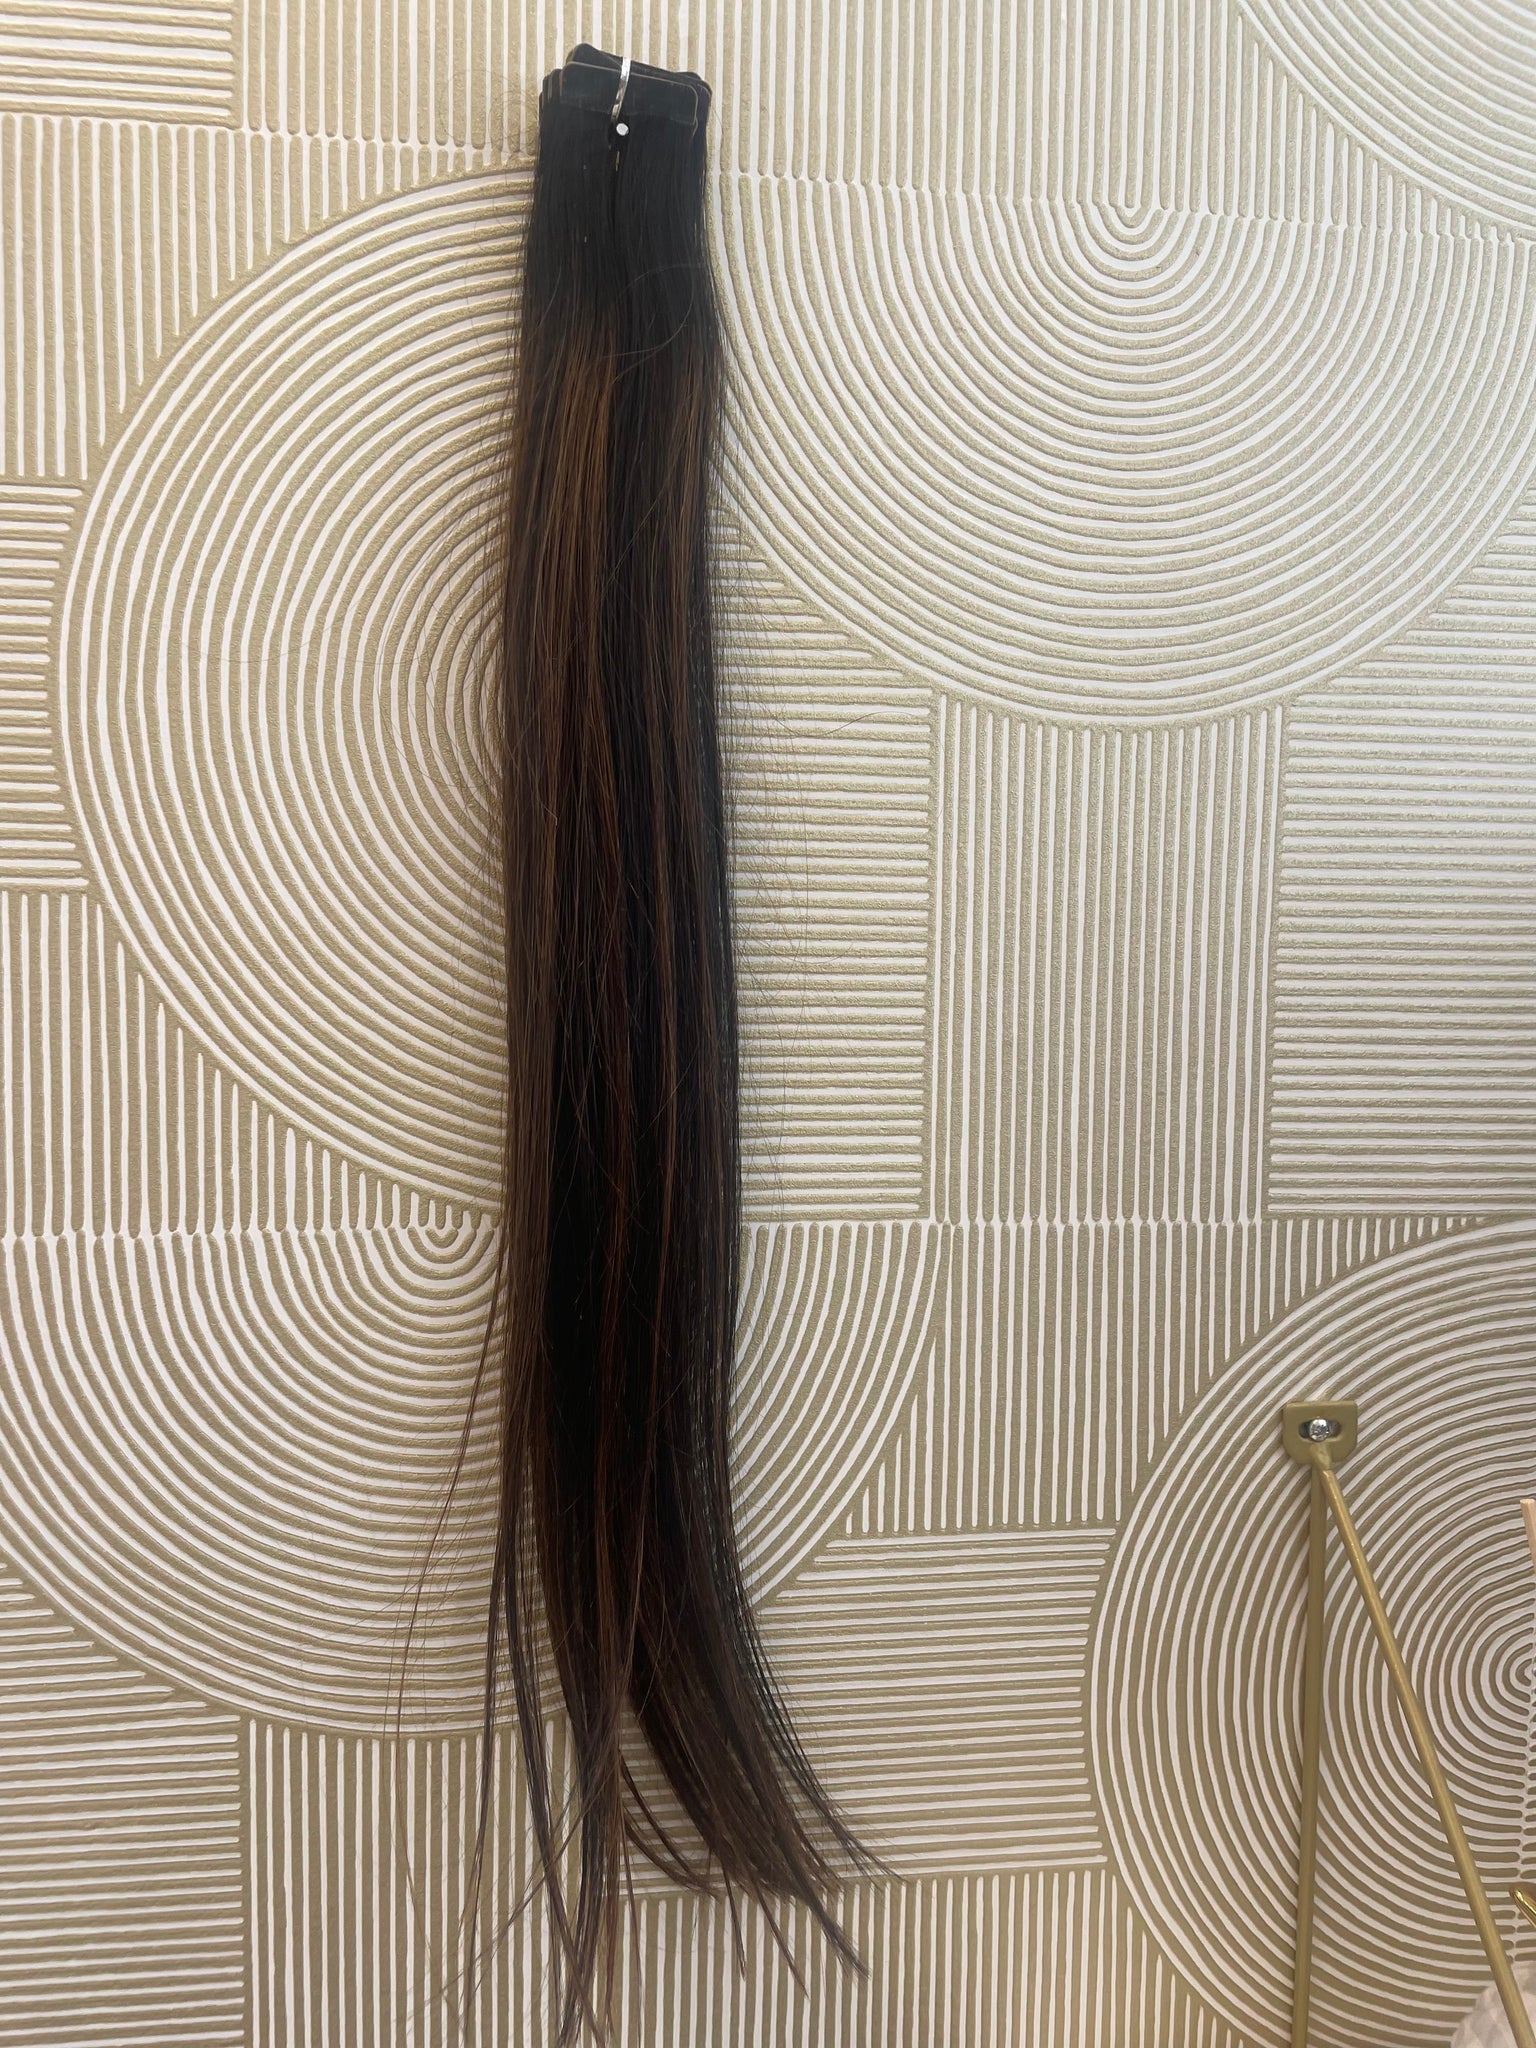 Extensions Tape 50 gram (1B4B) 55 cm European hair